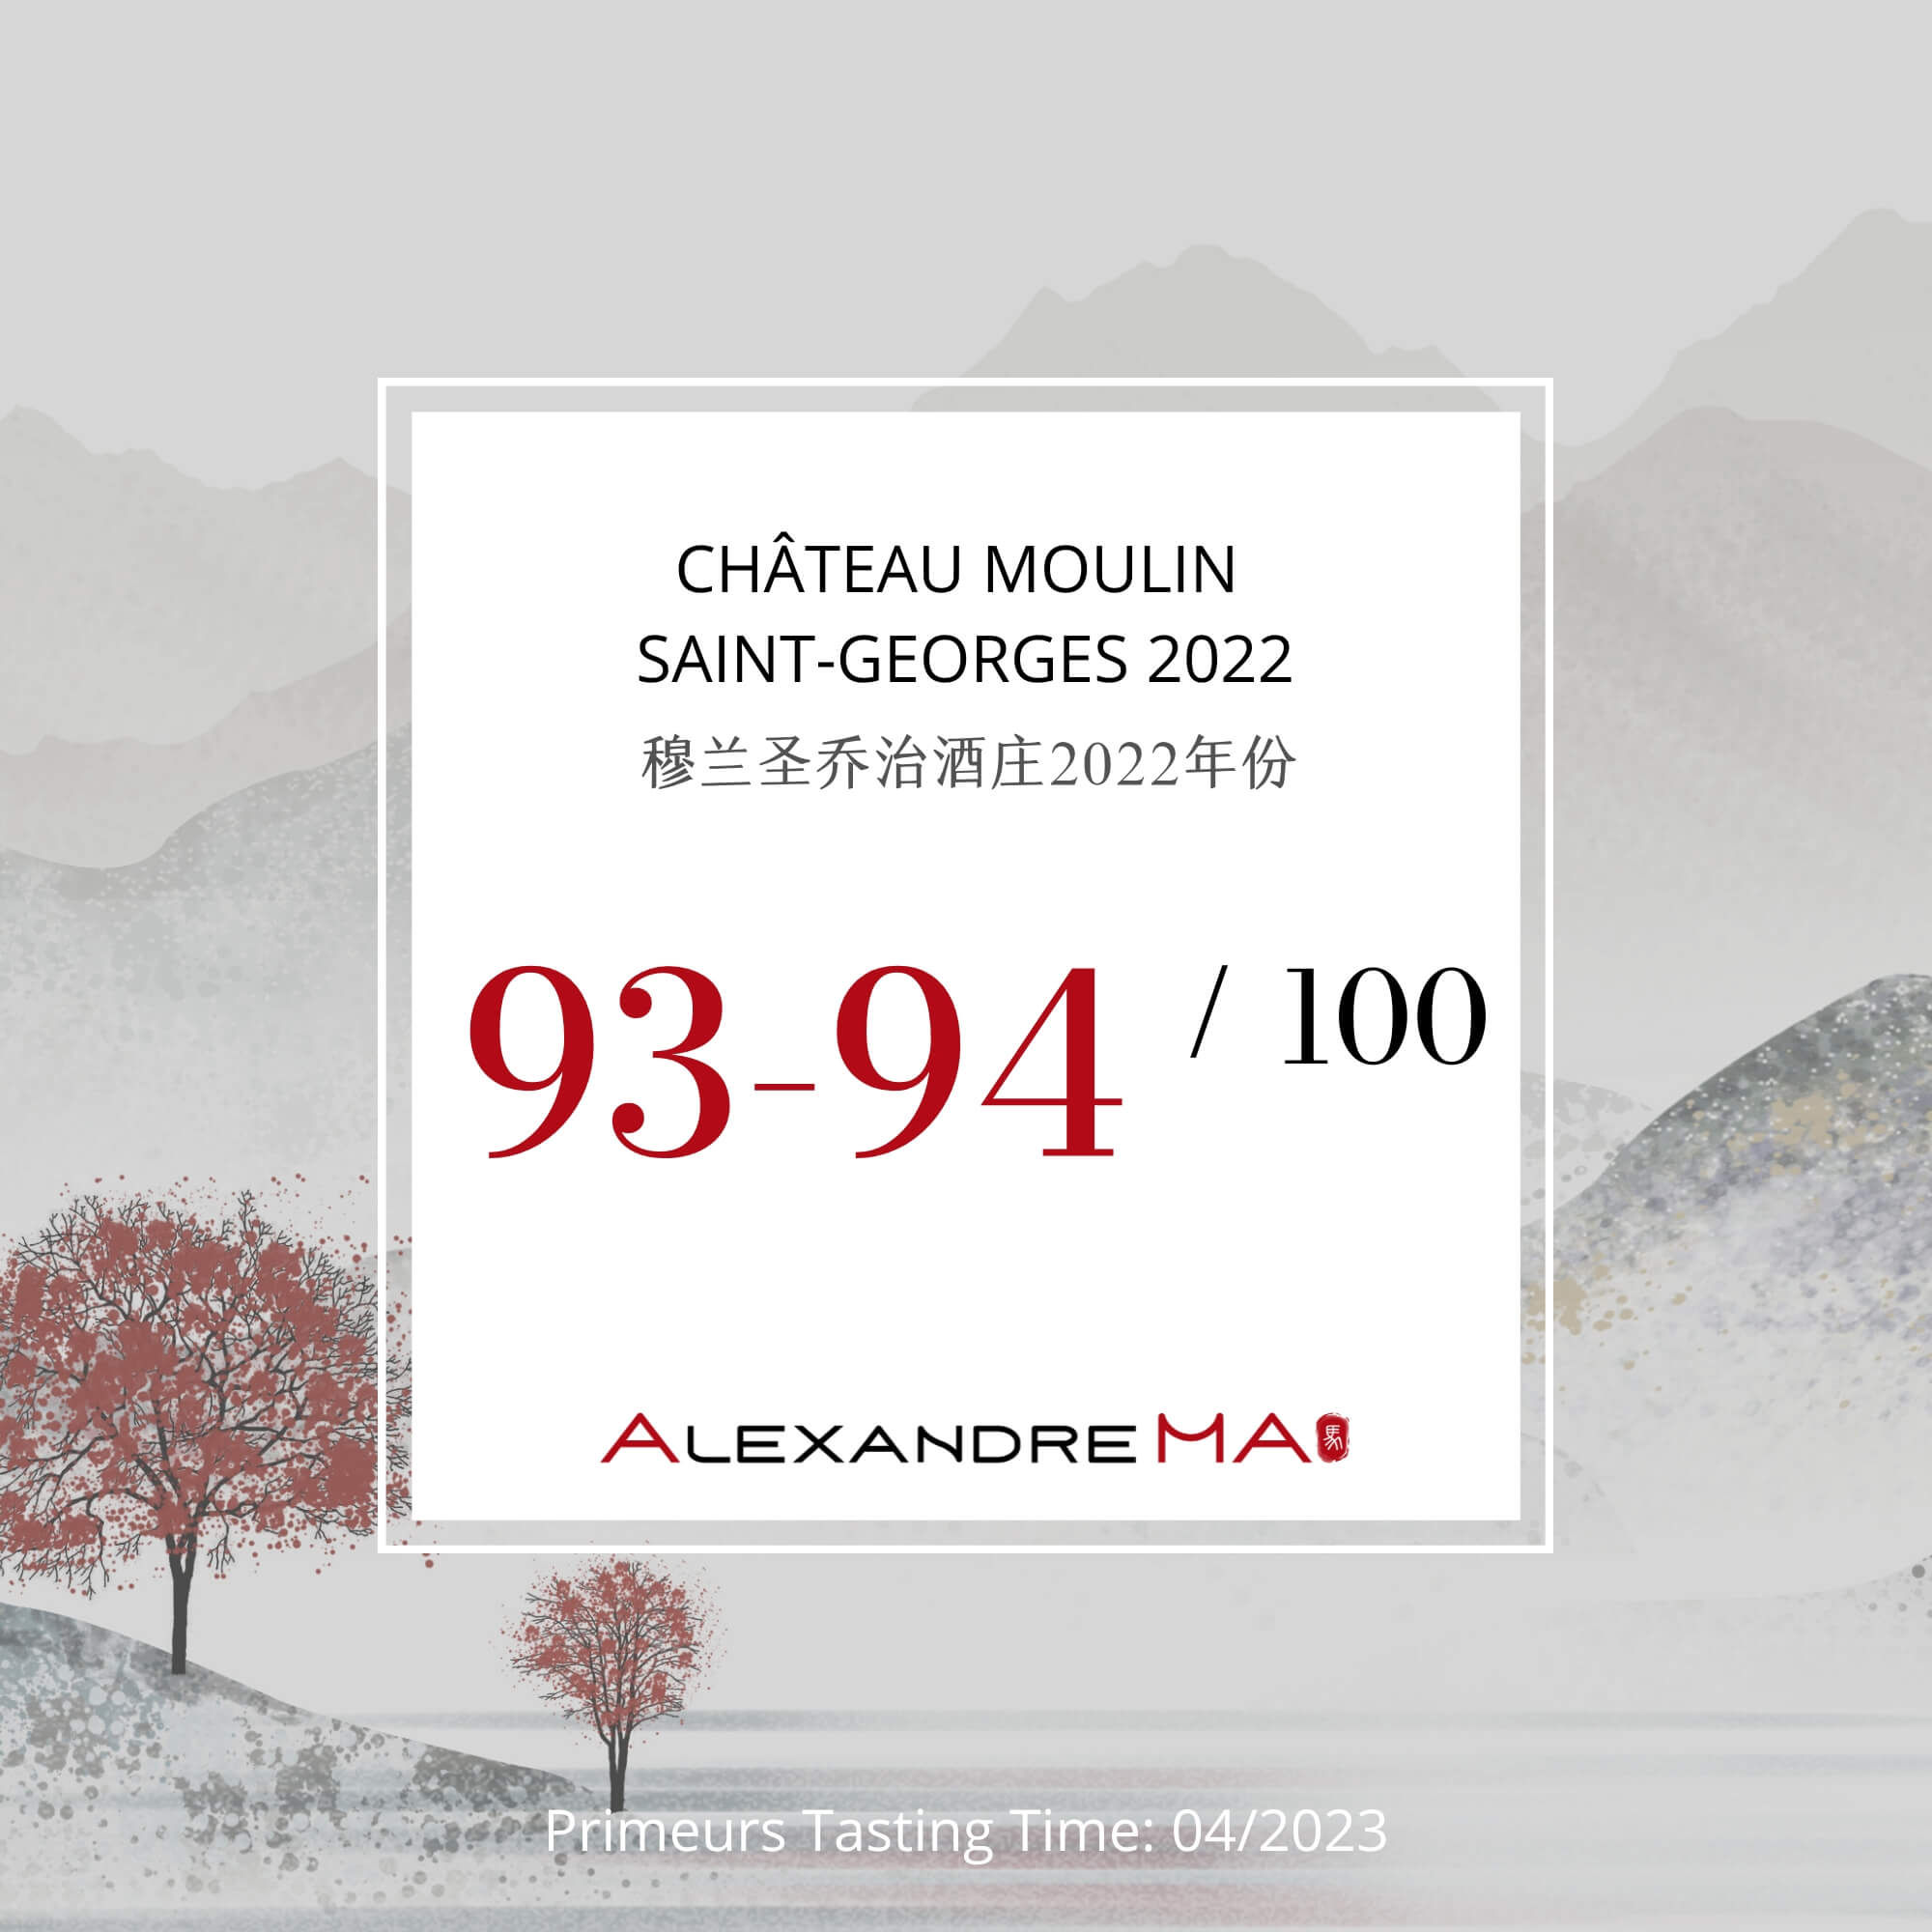 Château Moulin Saint-Georges 2022 Primeurs - Alexandre MA